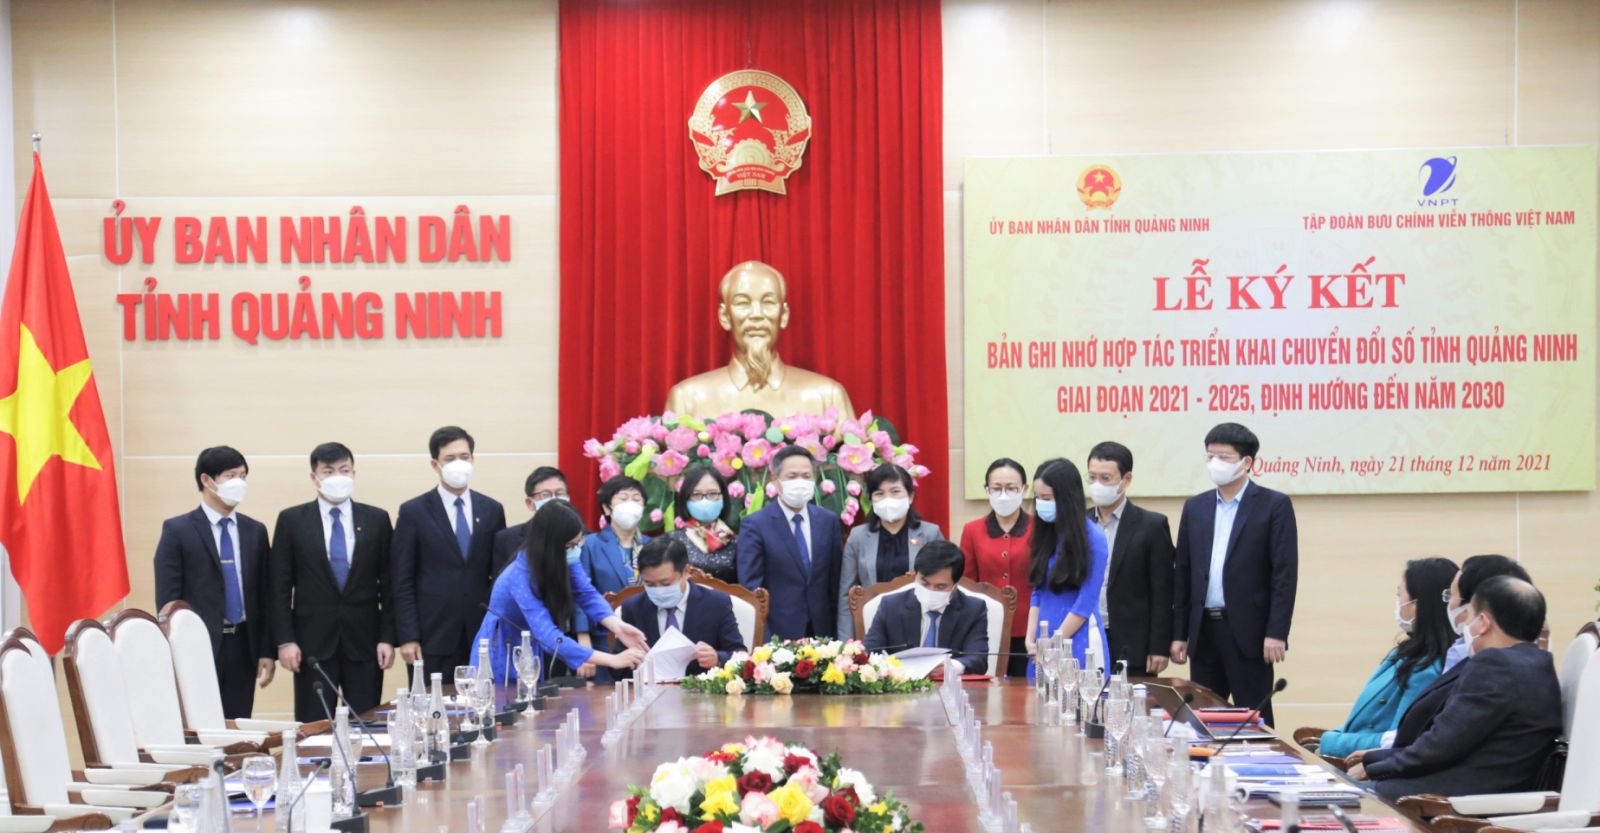 Lãnh đạo tỉnh Quảng Ninh và VNPT ký kết và trao bản ghi nhớ hợp tác triển khai chuyển đổi số toàn diện tỉnh Quảng Ninh giai đoạn 2021-2026.jpg